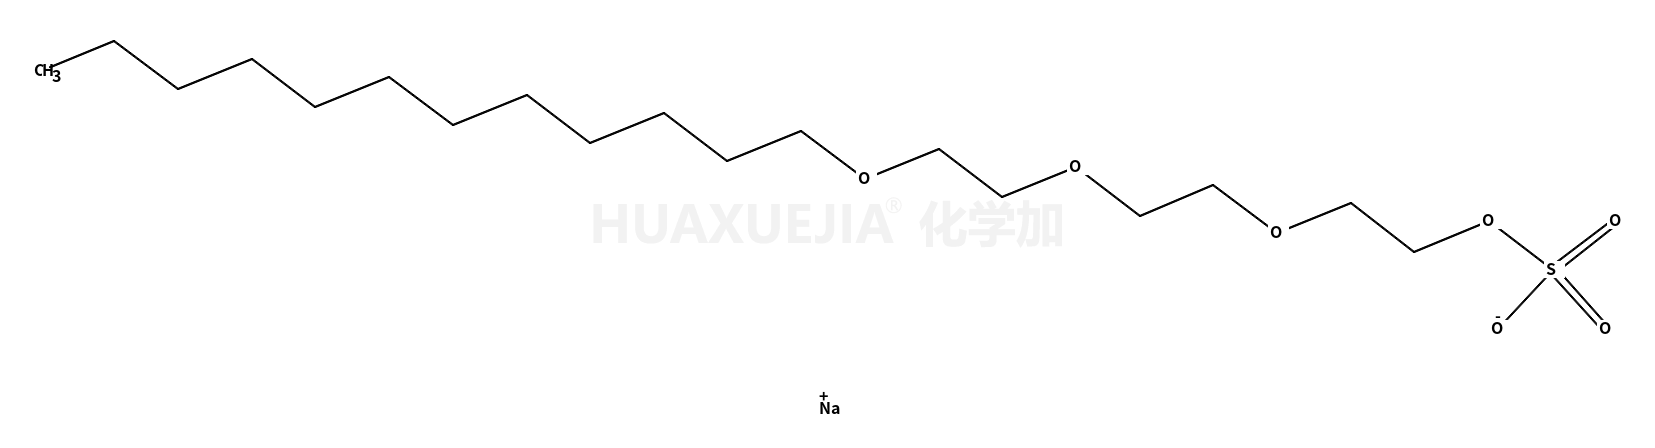 十二烷基醚硫酸钠